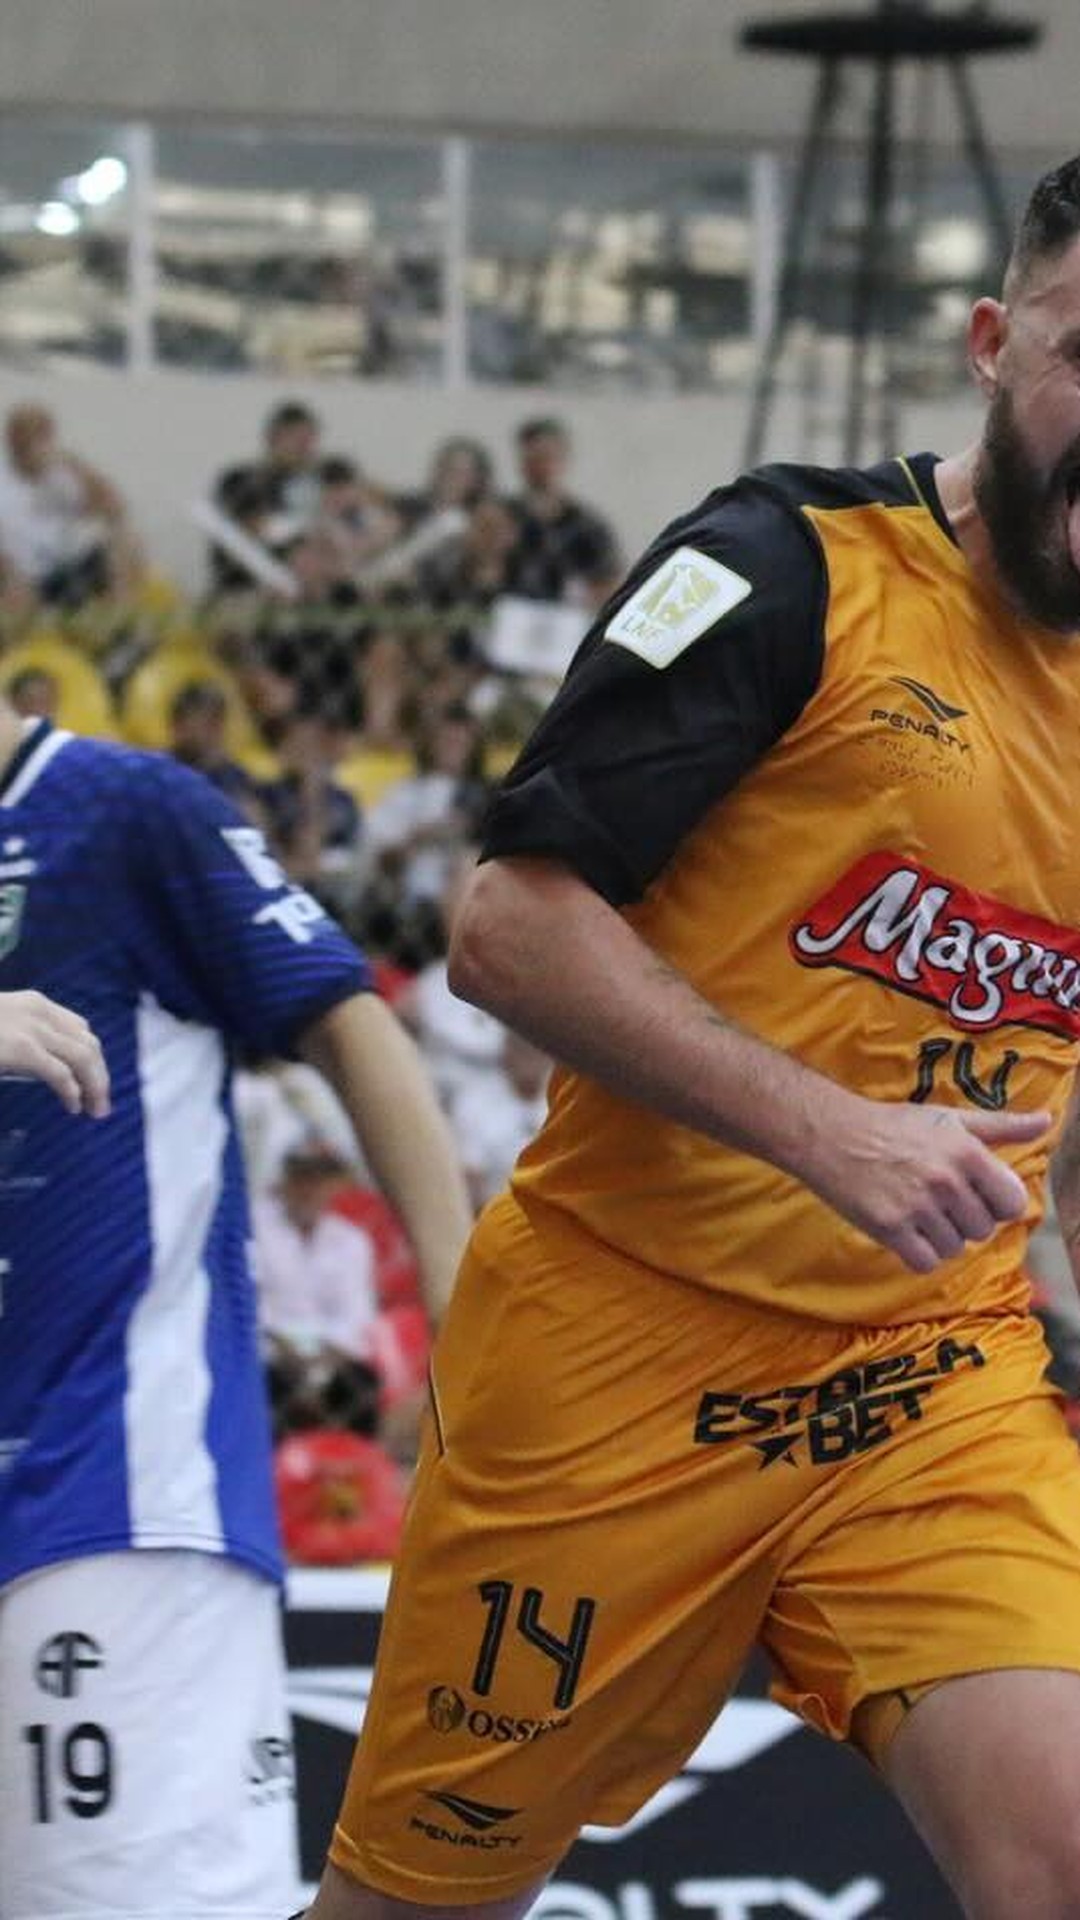 Eleito melhor jogador de futsal do mundo por três temporadas fará palestra  em Catolé do Rocha-PB - Esporte do Vale